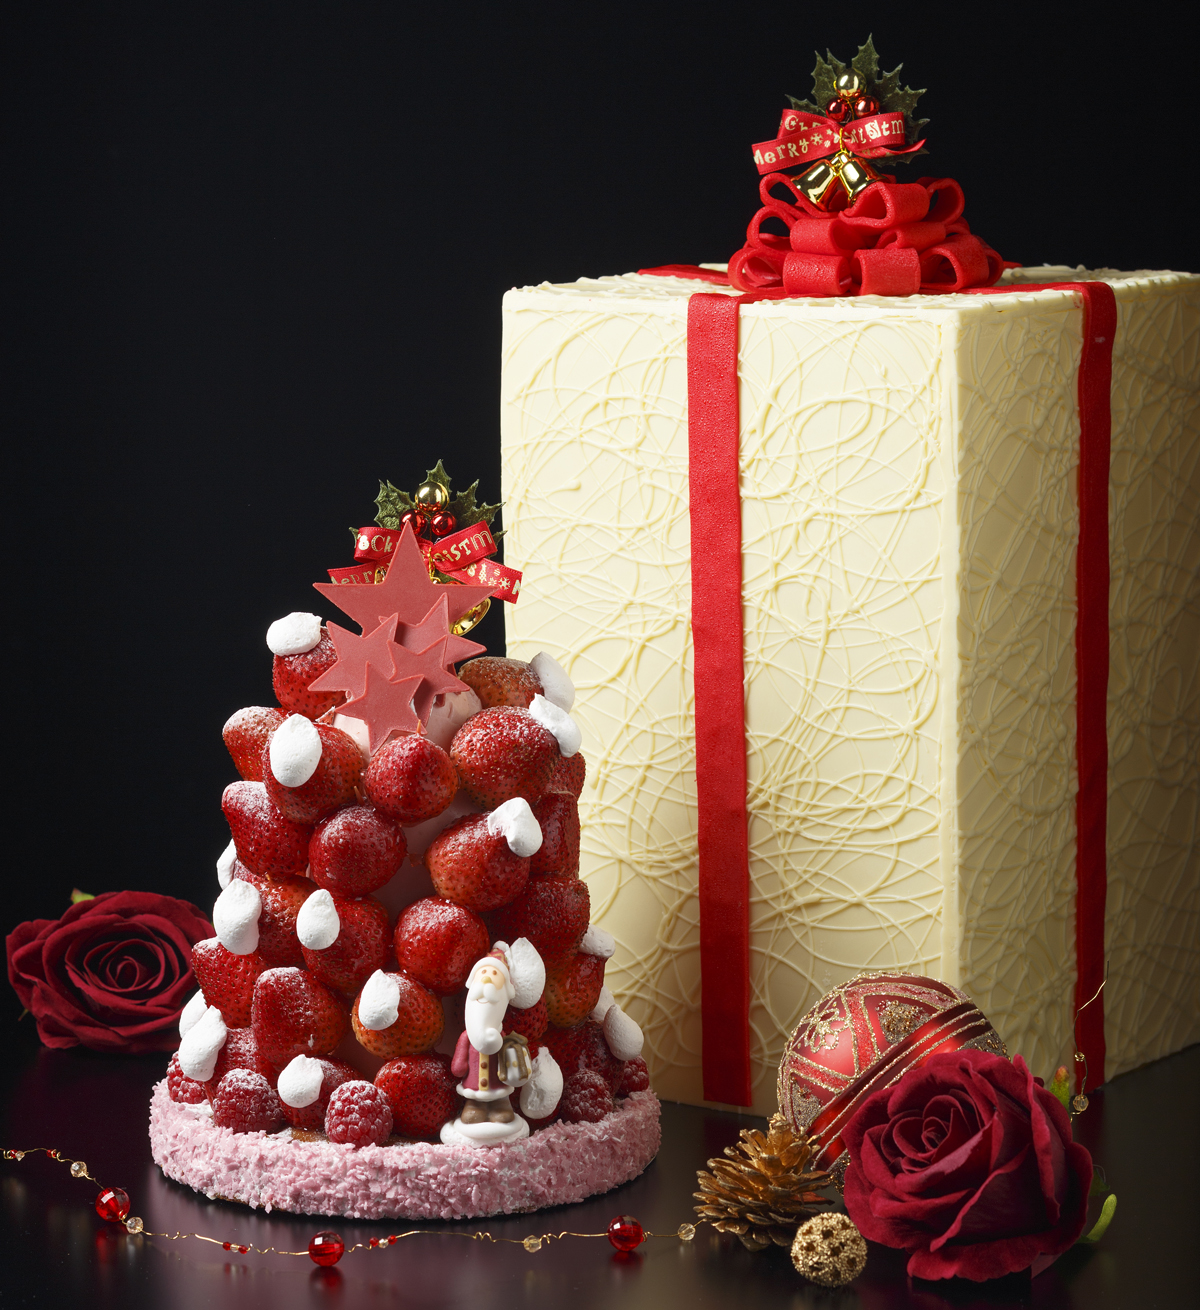 浅草ビューホテル あま いホワイトチョコのギフトボックス クリスマスに大切な人へ贈るスペシャルケーキ 日本ビューホテル株式会社のプレスリリース